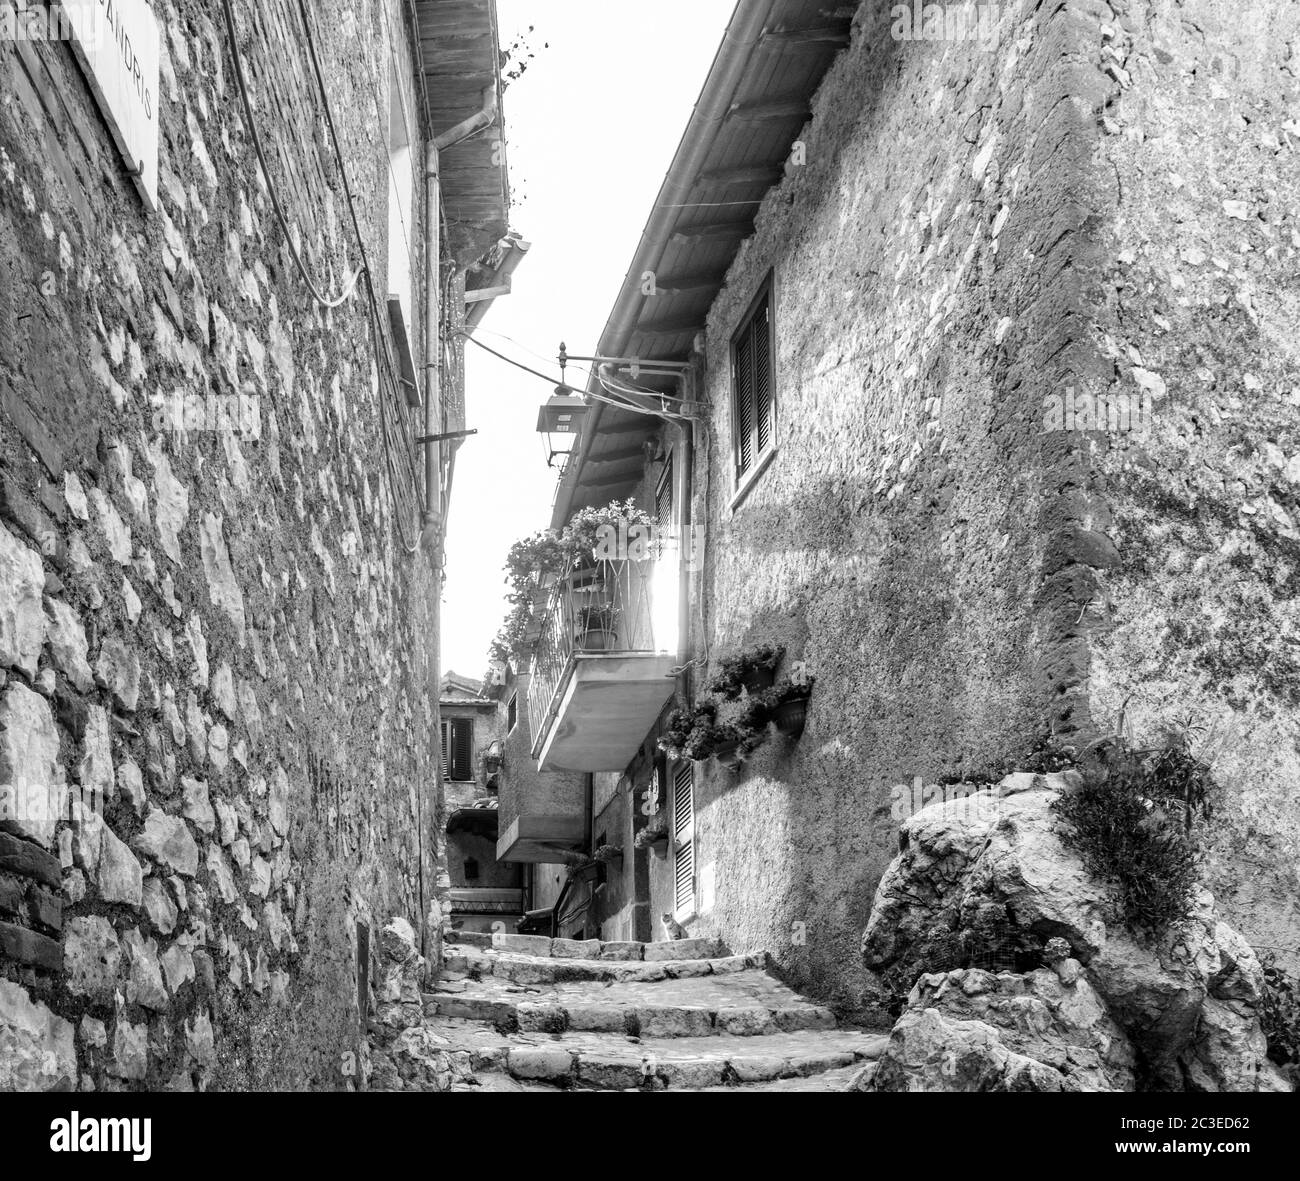 Les maisons caractéristiques de l'ancien village d'Artena, avec des escaliers et des ruelles pavées et étroites. Les balcons et les portes ornent Banque D'Images